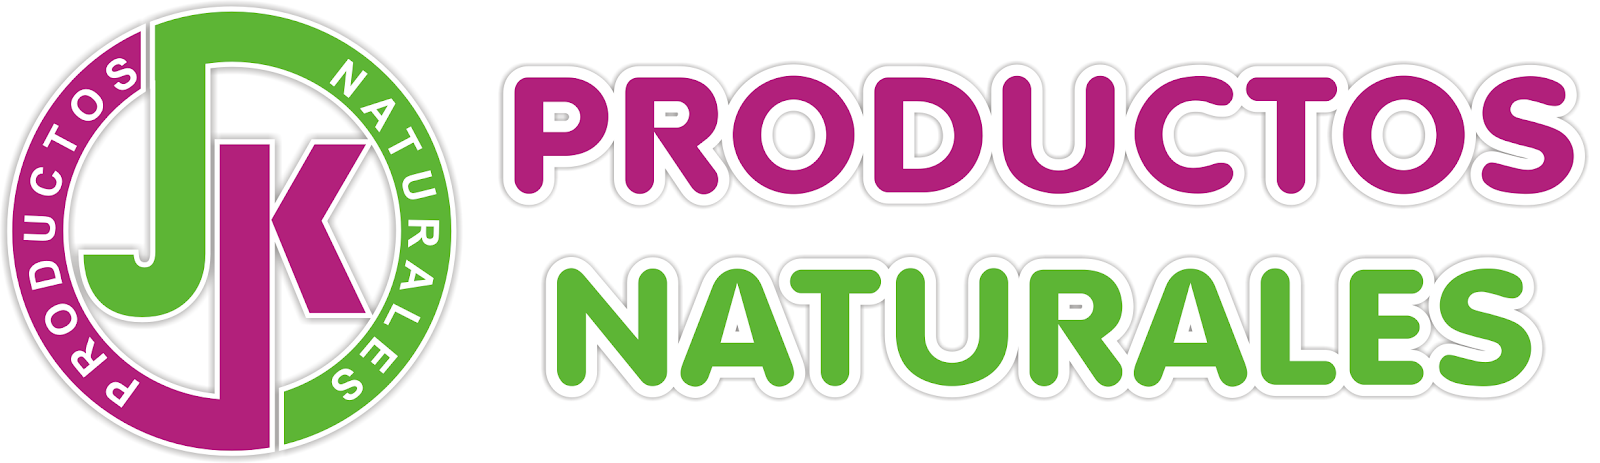 J & K Productos Naturales